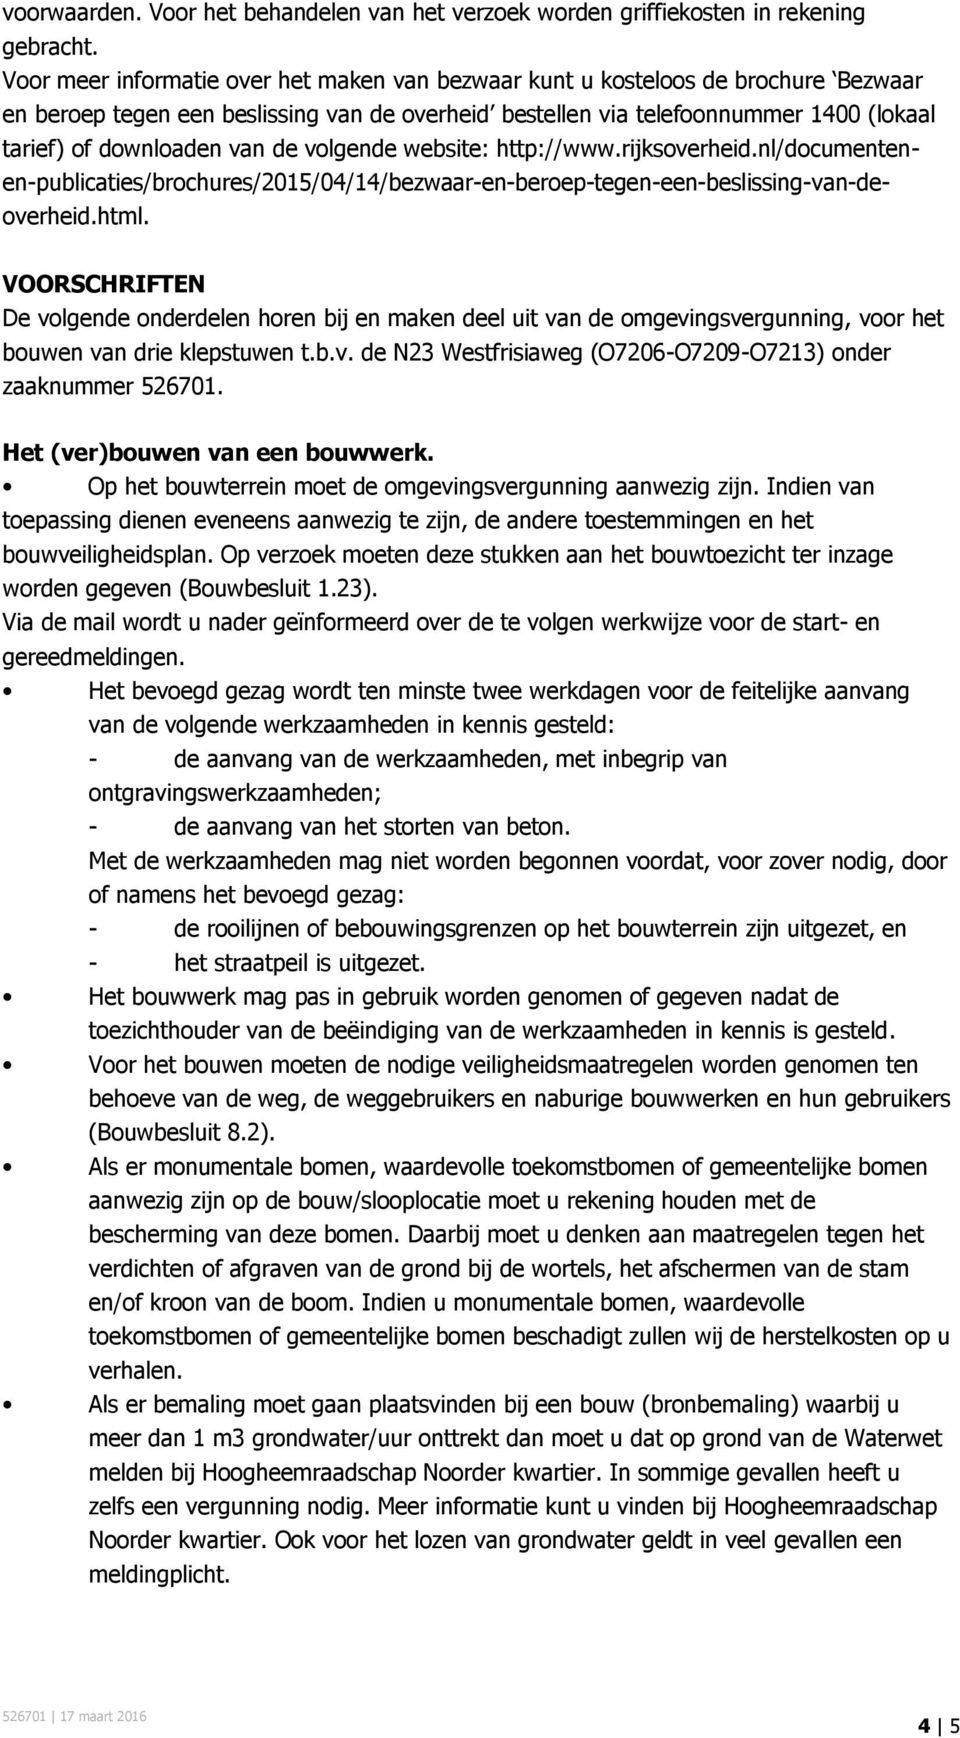 de volgende website: http://www.rijksoverheid.nl/documentenen-publicaties/brochures/2015/04/14/bezwaar-en-beroep-tegen-een-beslissing-van-deoverheid.html.